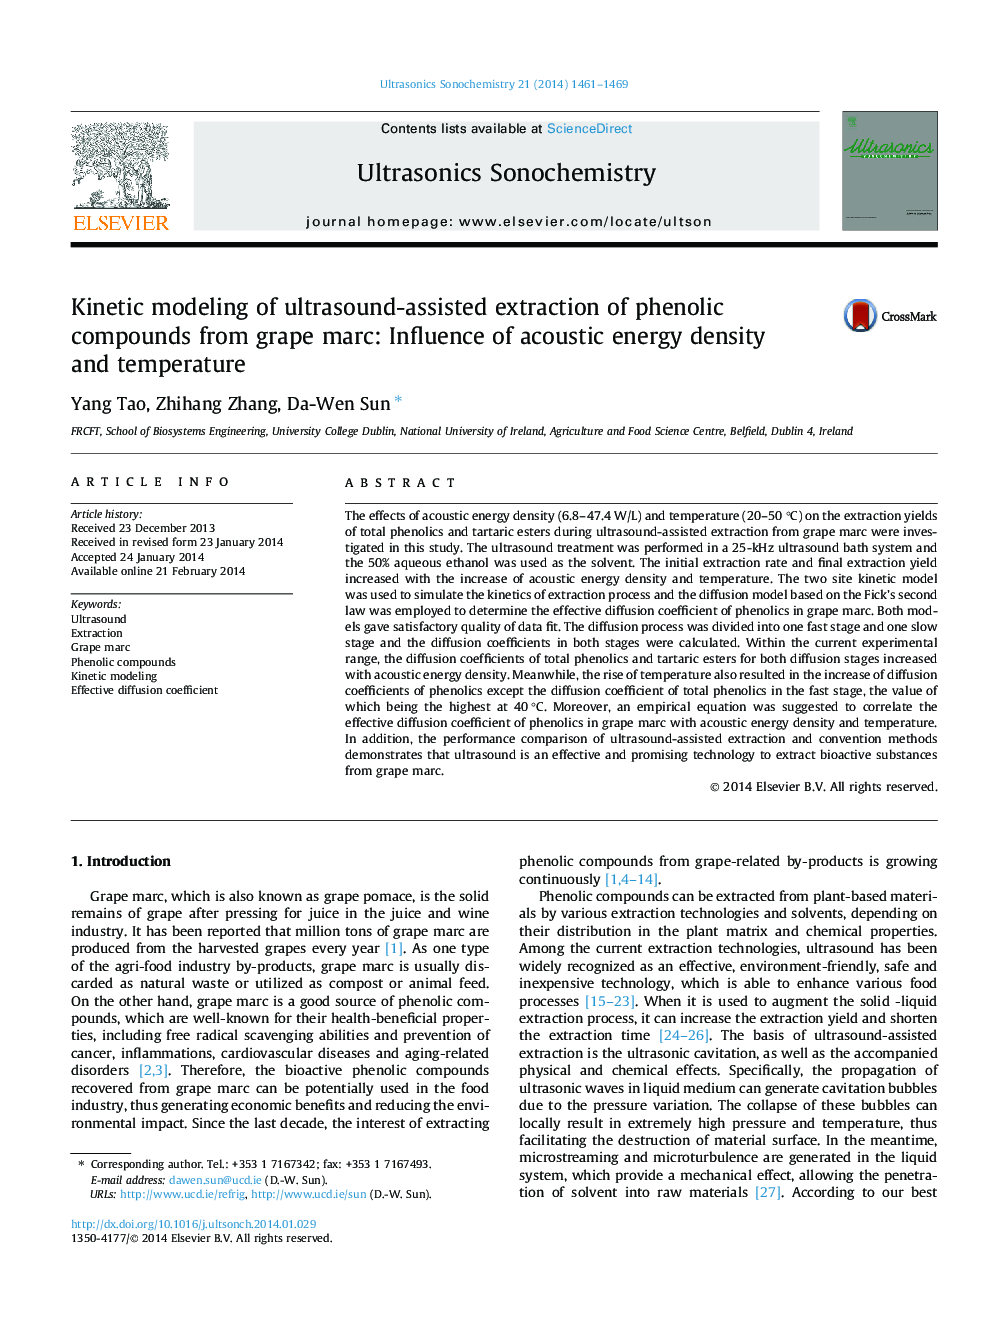 مدل سازی جنبشی از استخراج اولتراسوند از ترکیبات فنلی مارک انگور: تاثیر تراکم انرژی آکوستیک و دما 